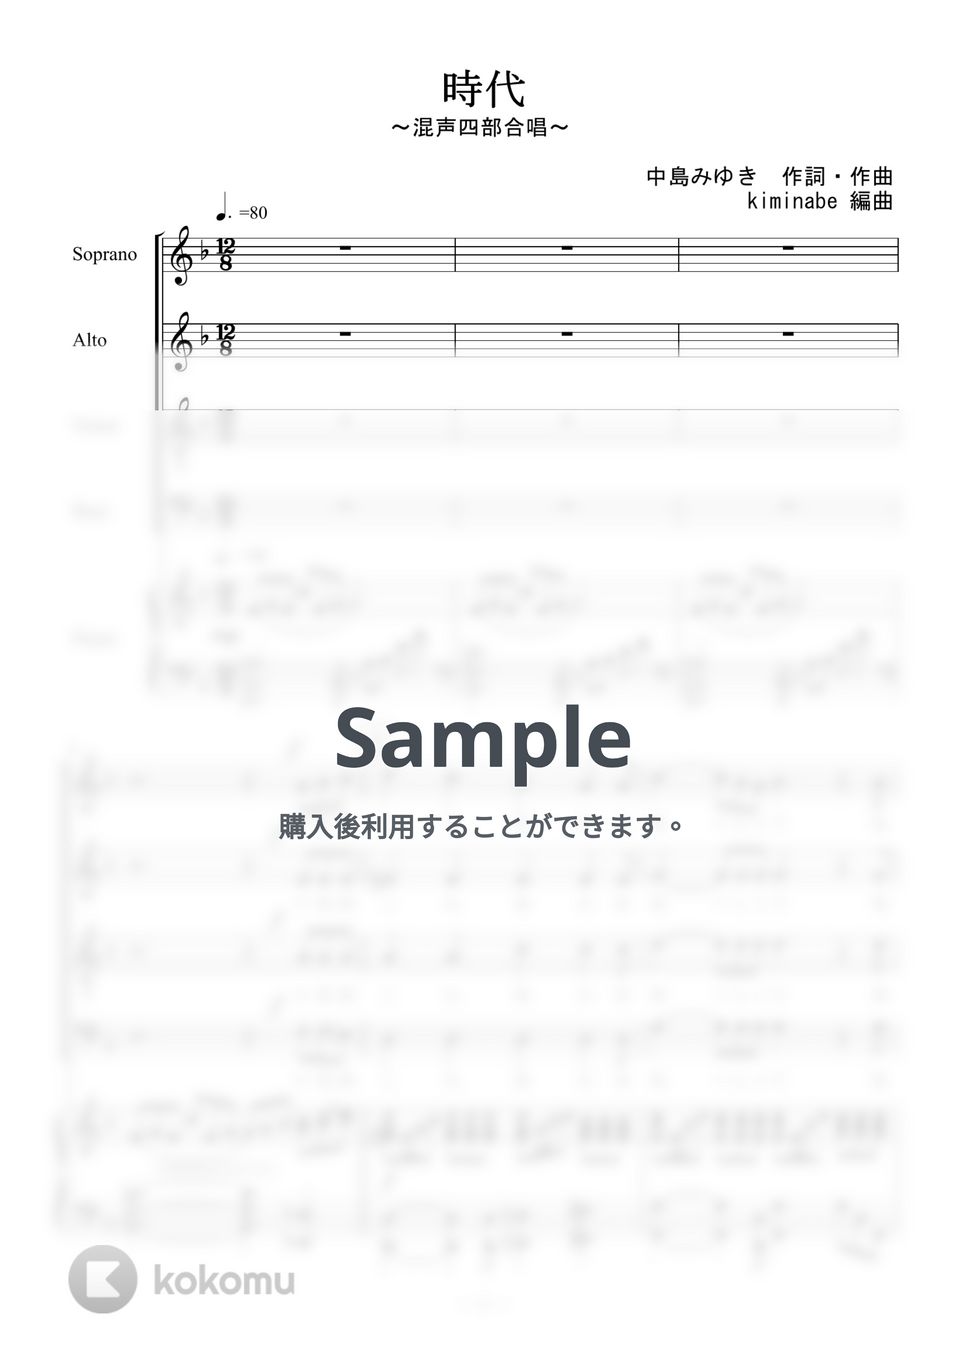 中島みゆき - 時代 (混声四部合唱) by kiminabe